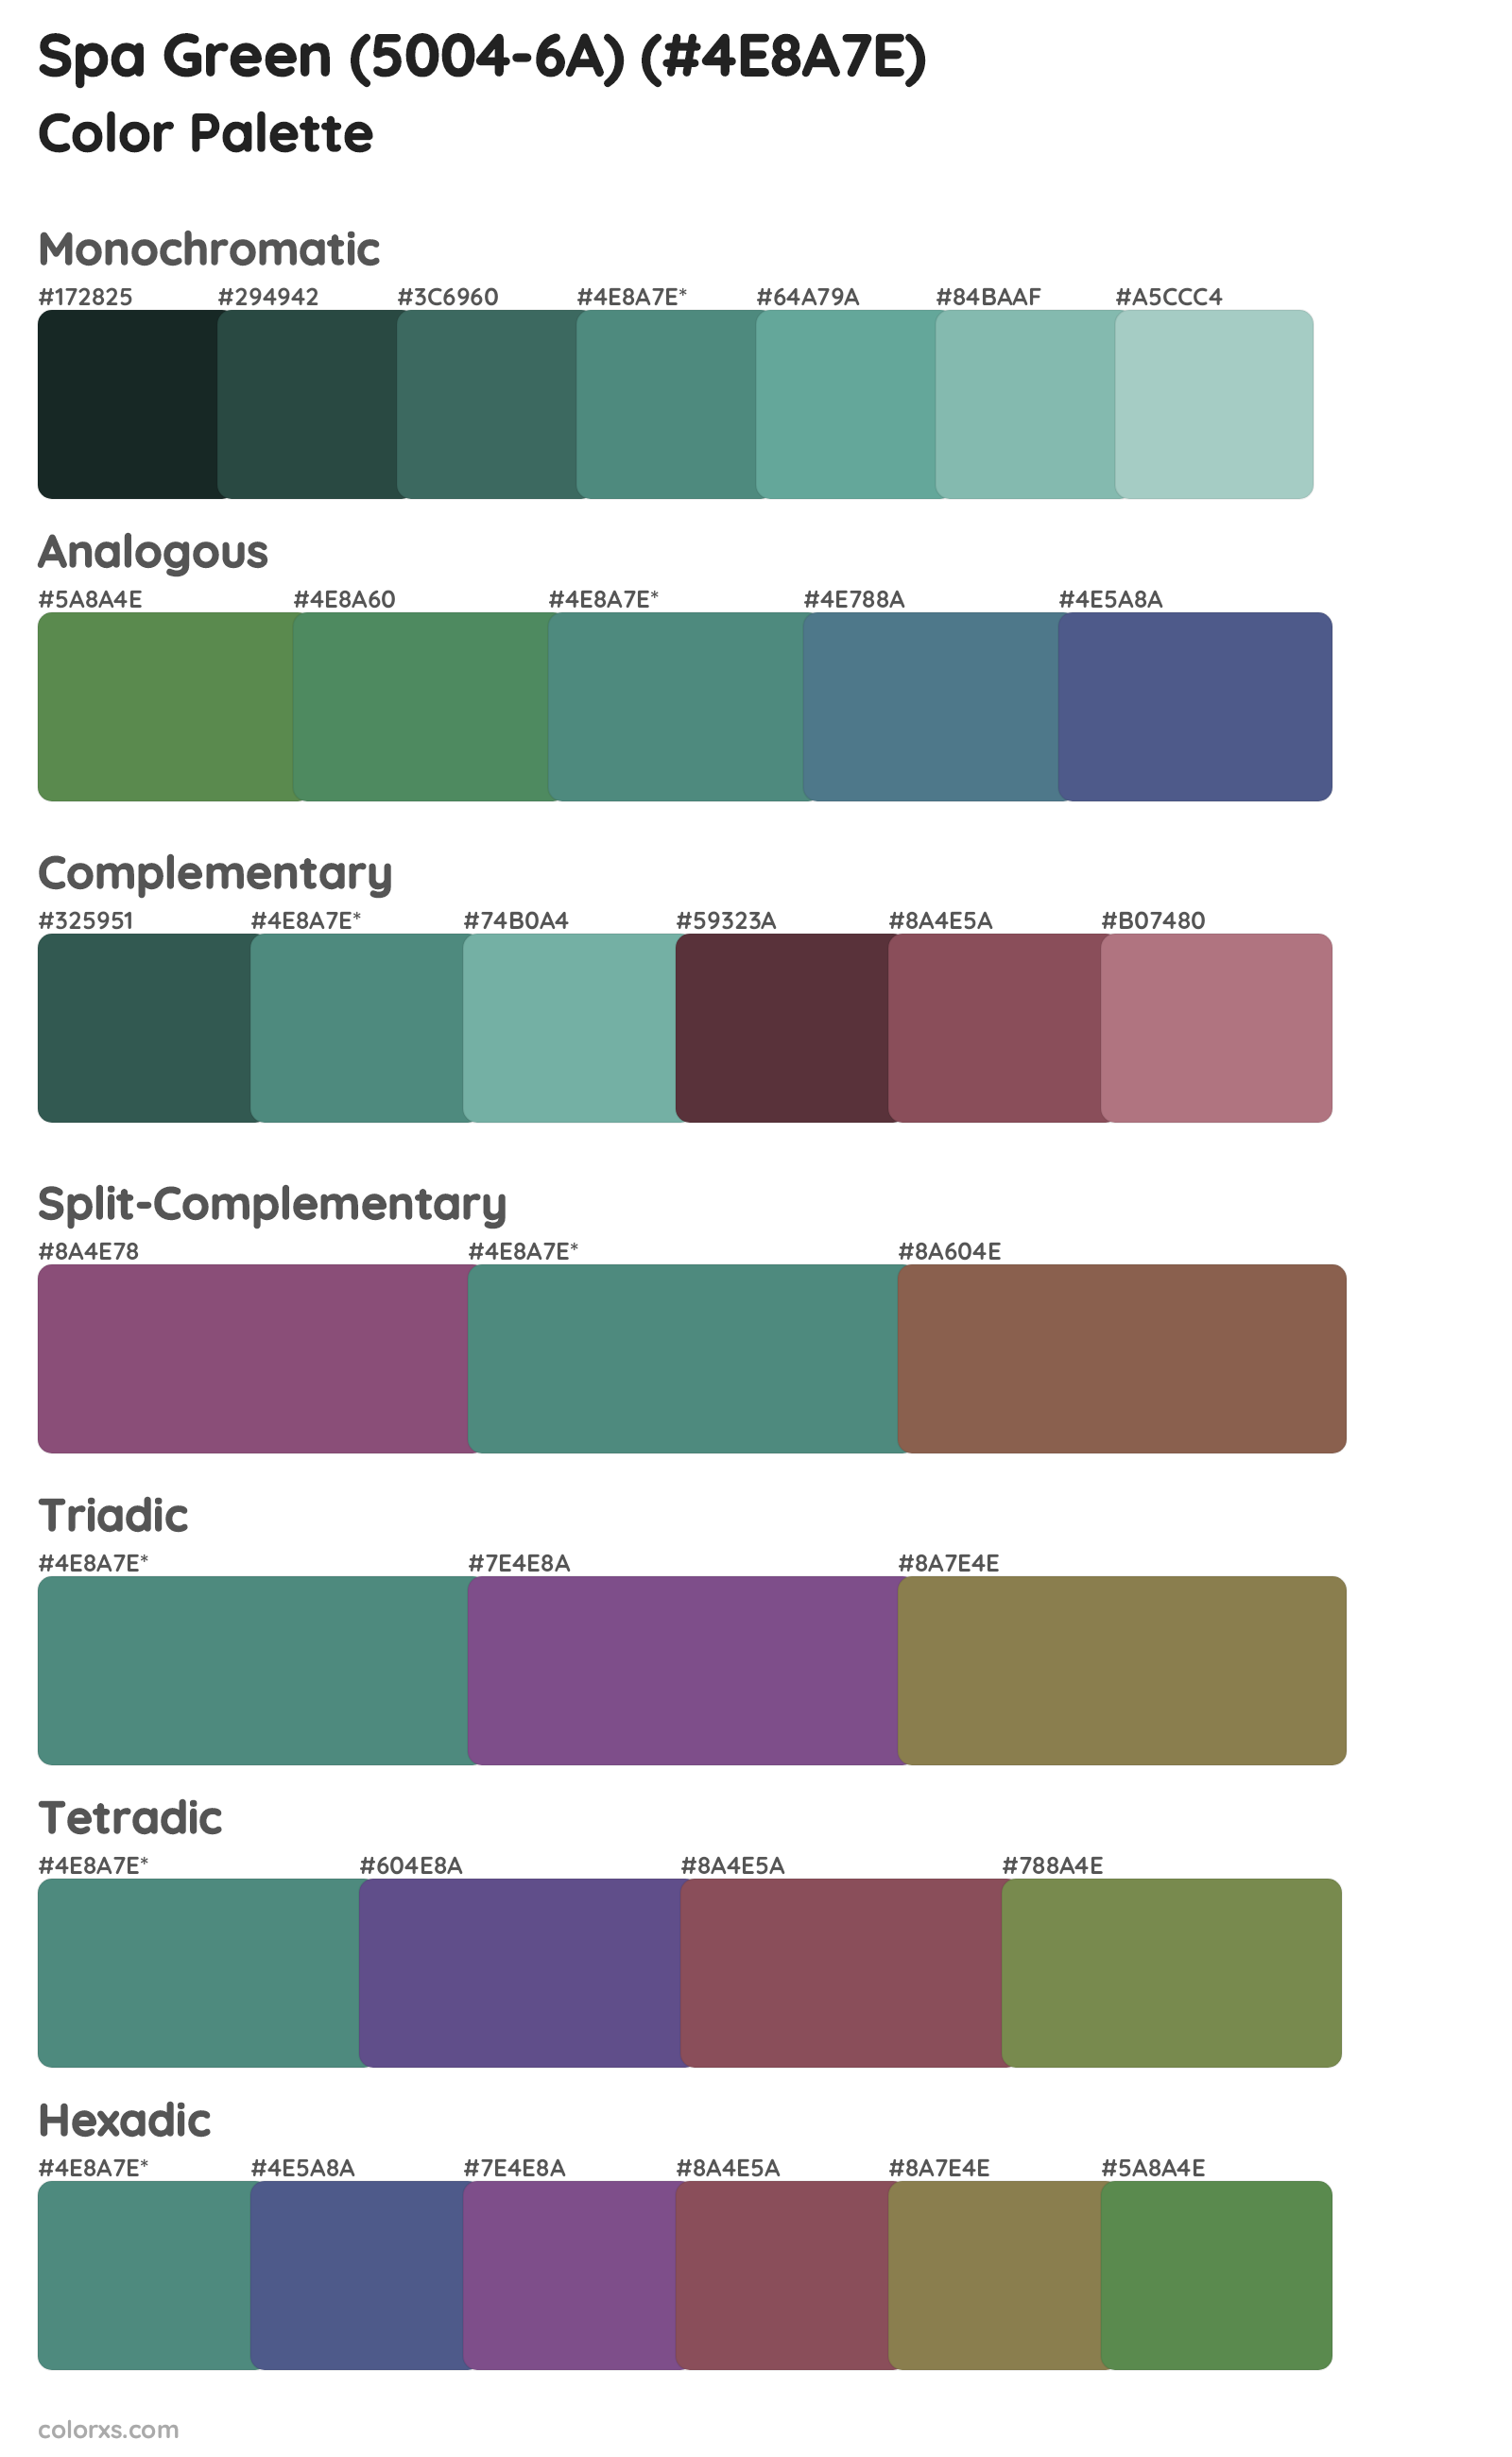 Spa Green (5004-6A) Color Scheme Palettes